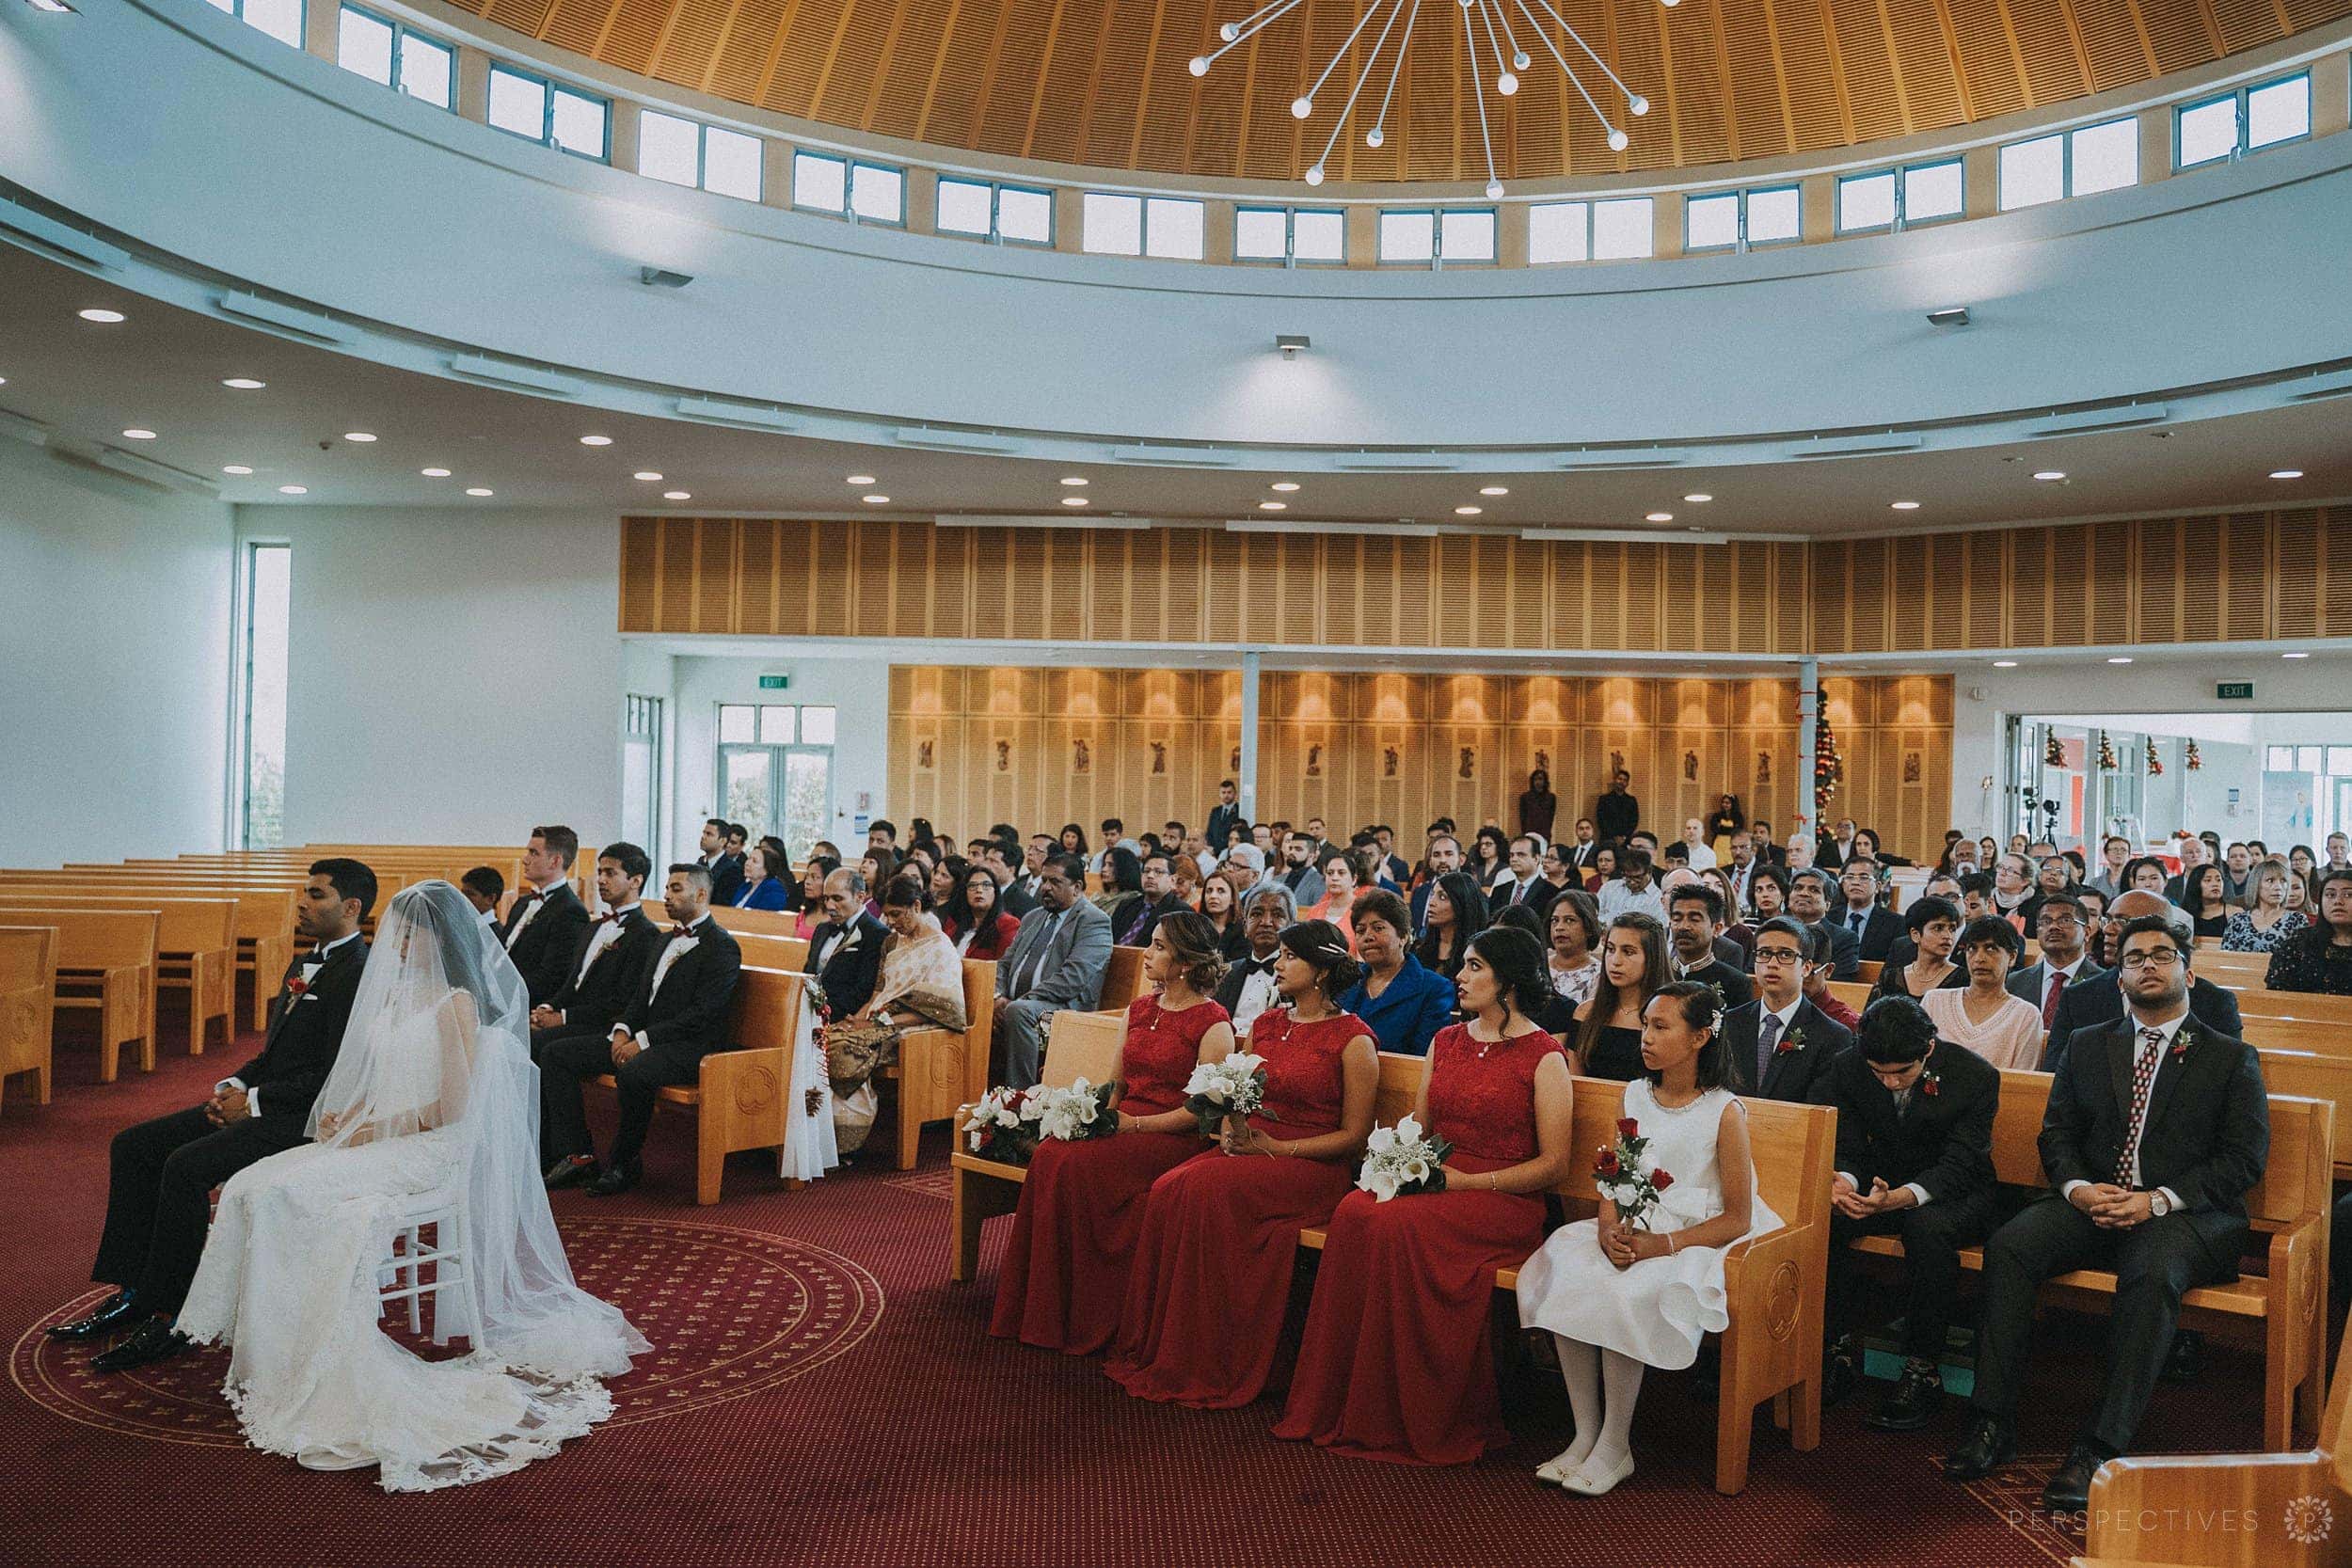 Catholic wedding Auckland wedding photos